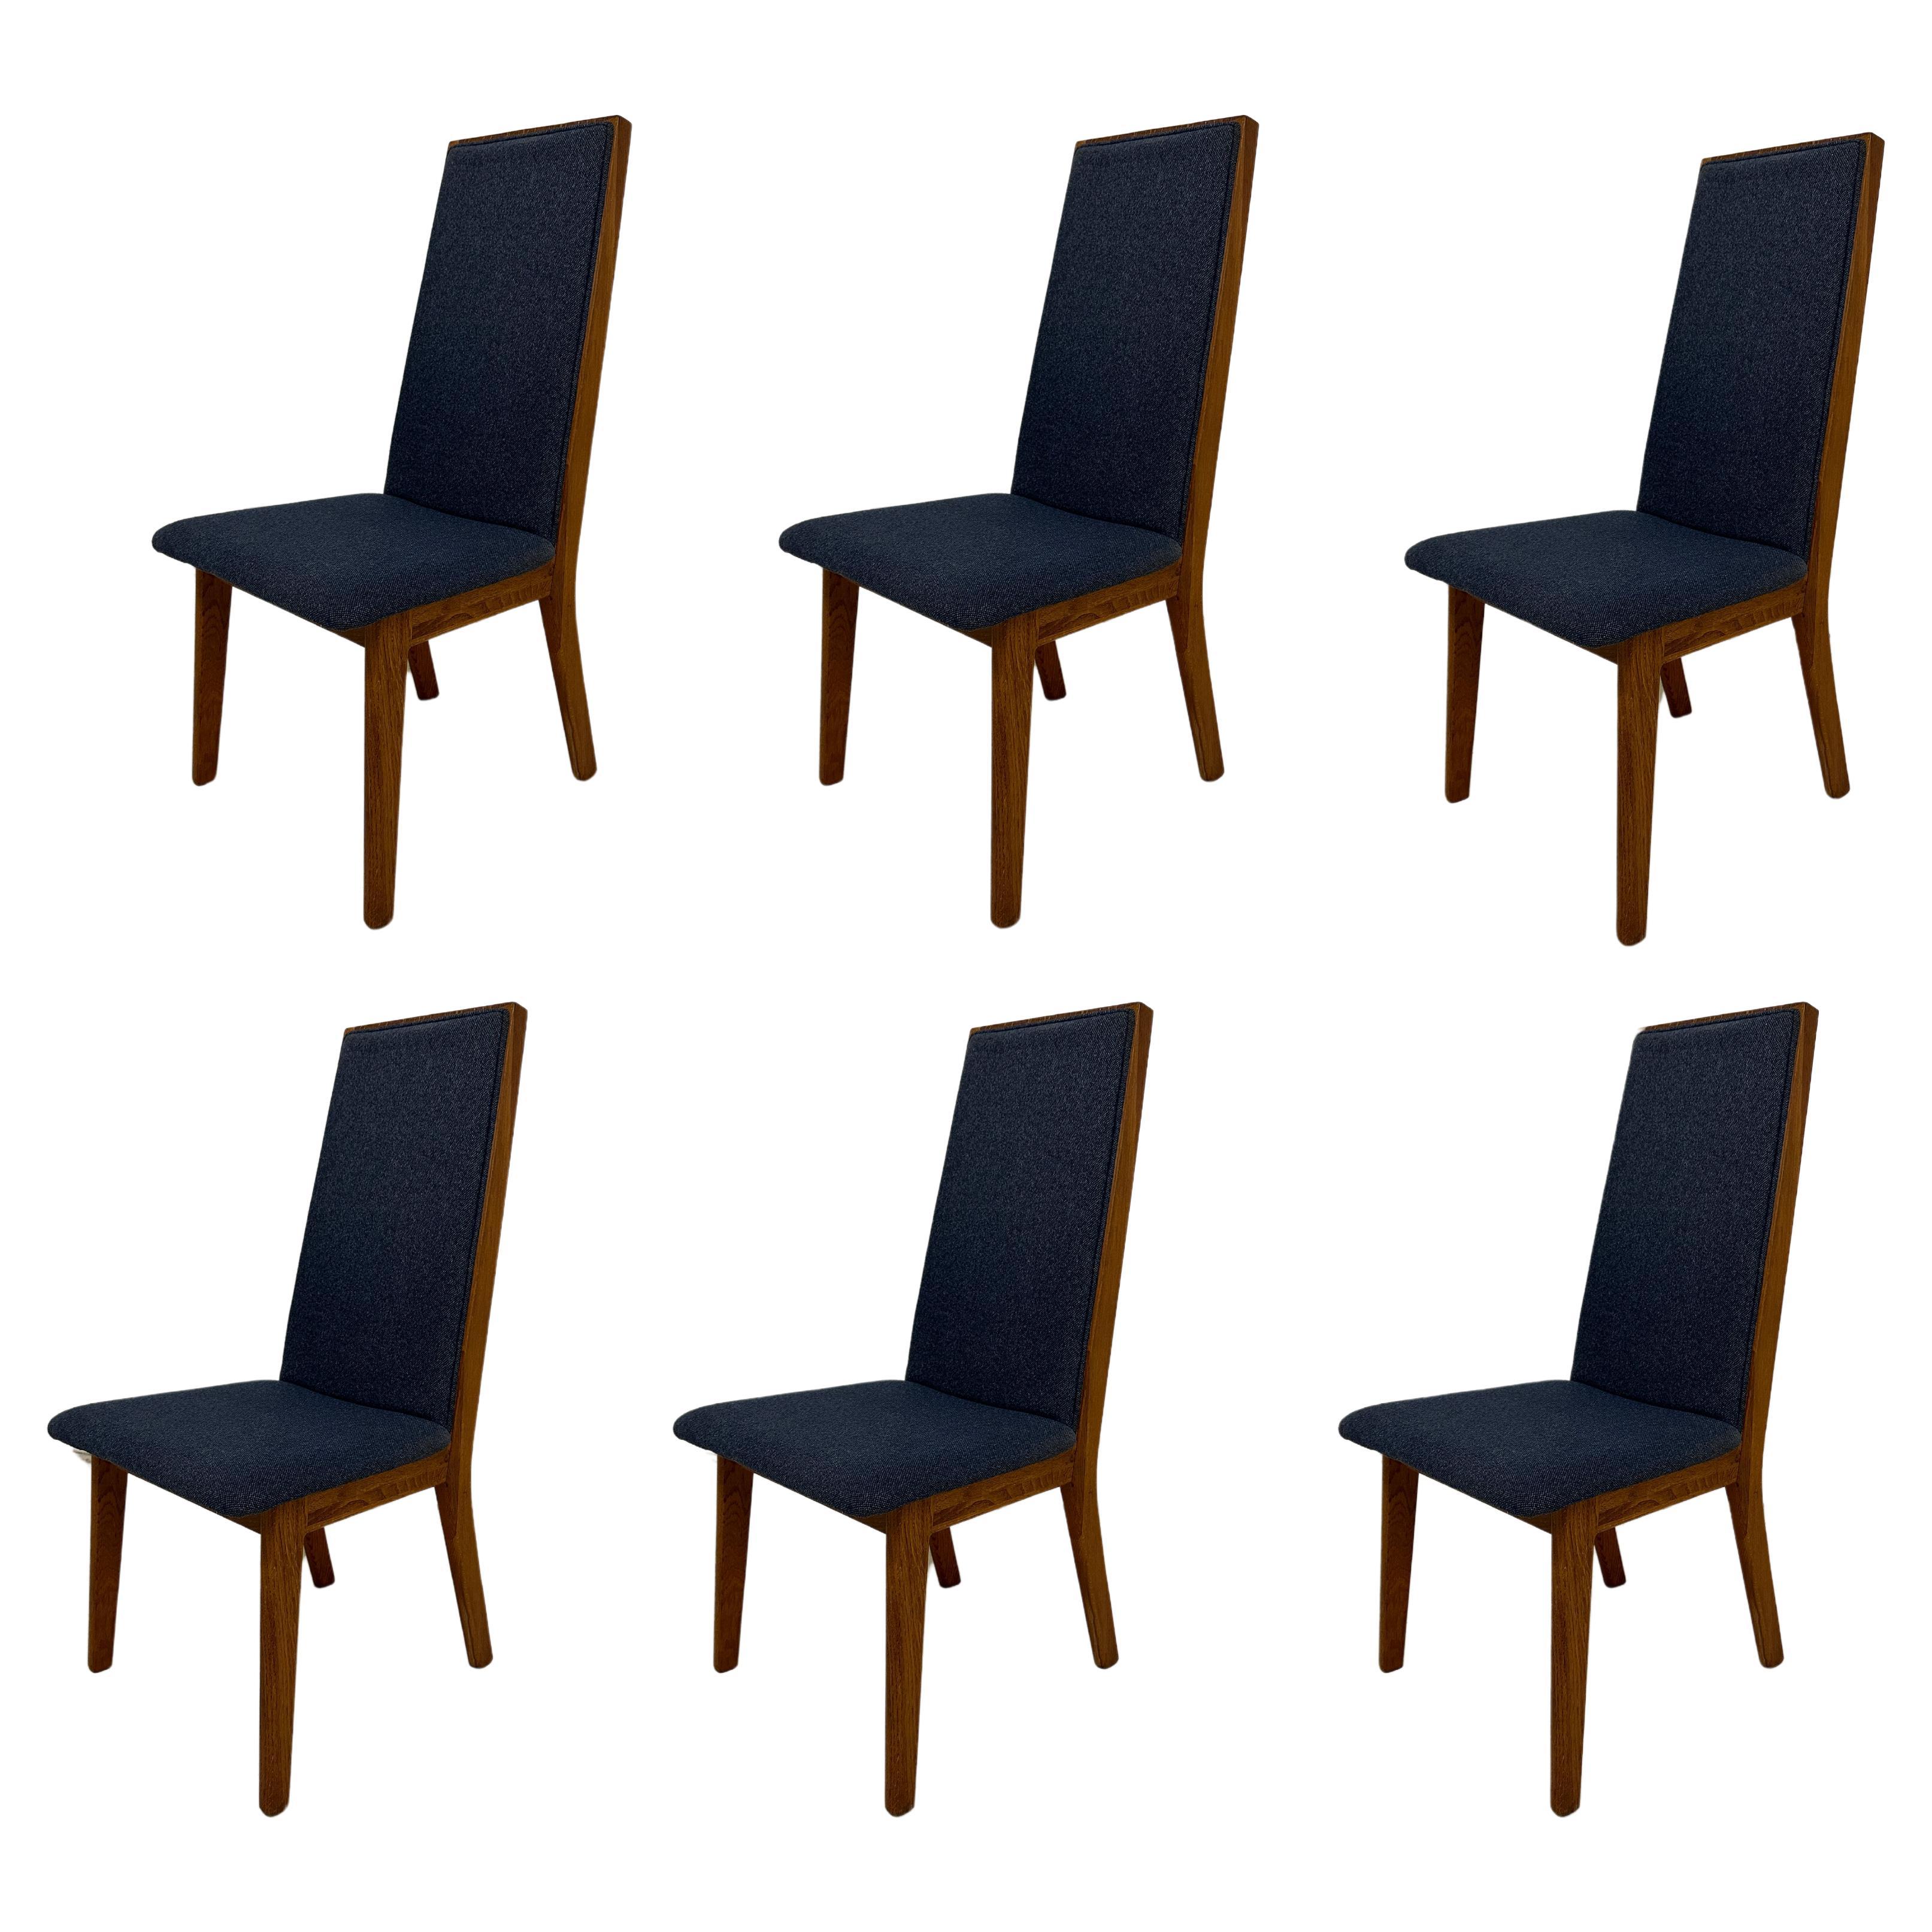 Satz von 6 blau-grauen dänischen Dyrlund-Esszimmerstühlen aus Teakholz in Blau/Grau